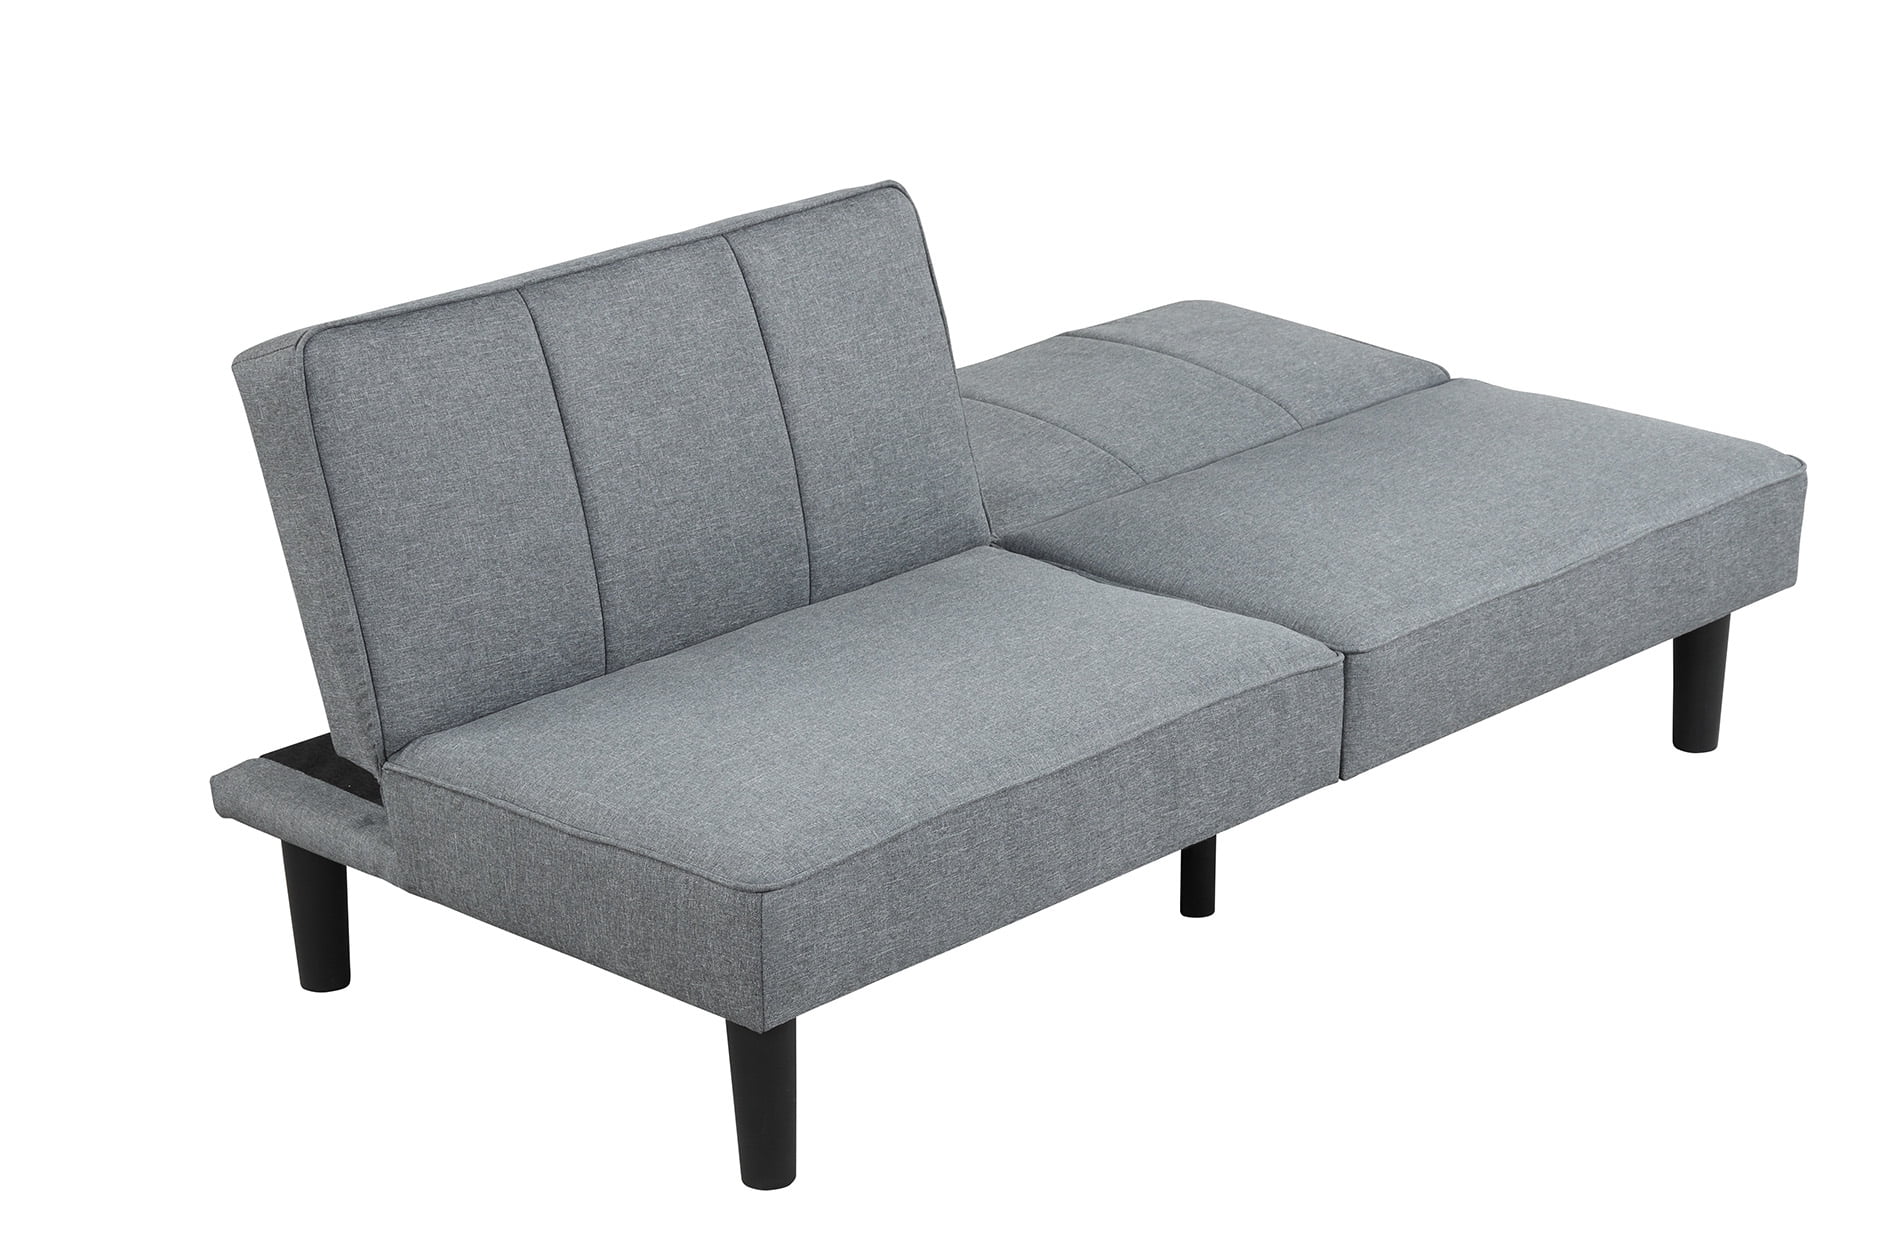 Comprar Sofá cama mainstays futon convertible. Modelo: BC-267 Gris